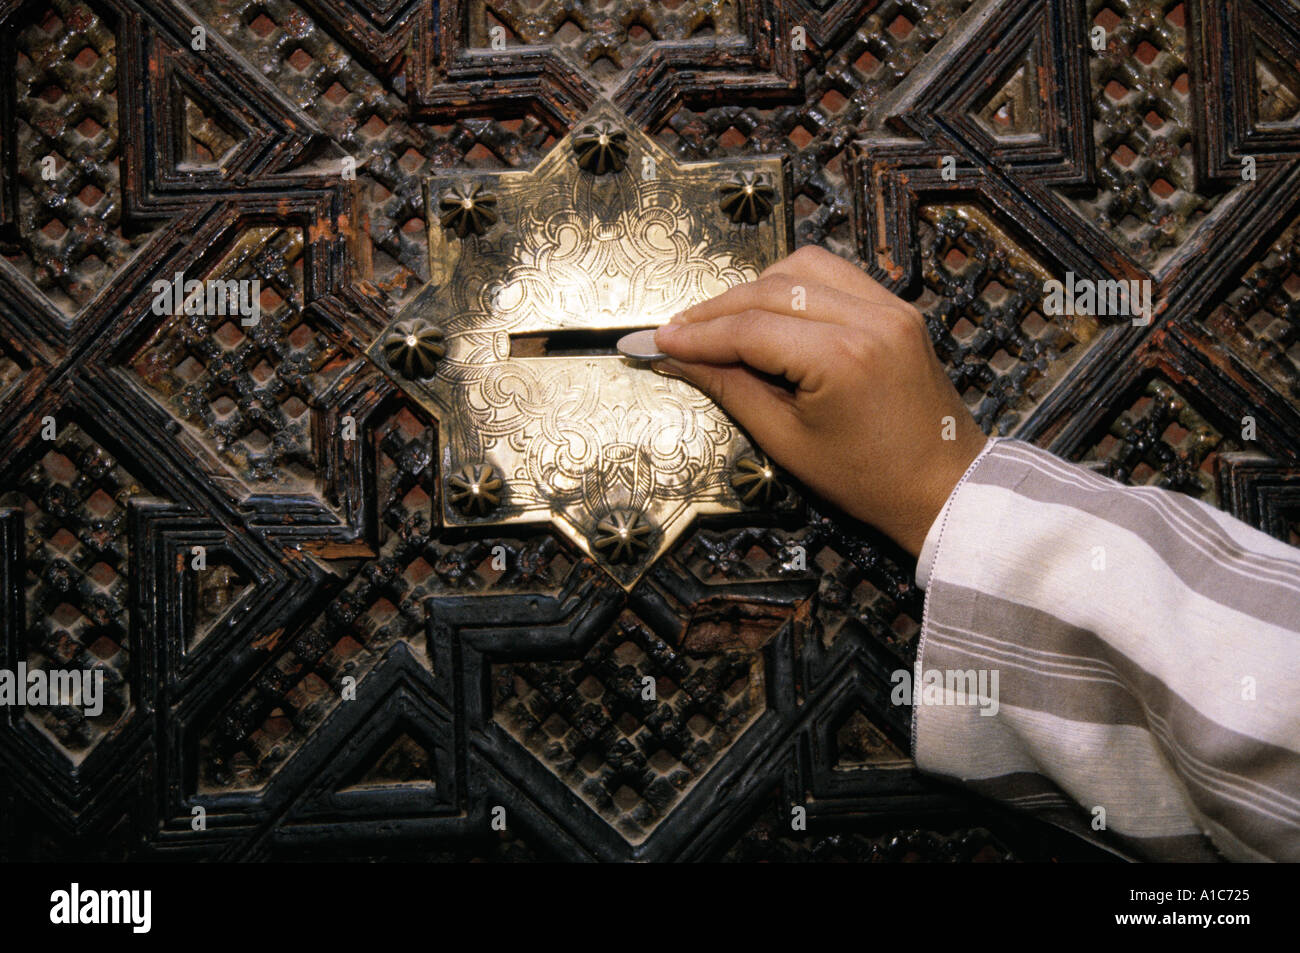 Zakat o dare elemosina è uno dei principali principi dell'Islam, qui in Marocco Foto Stock